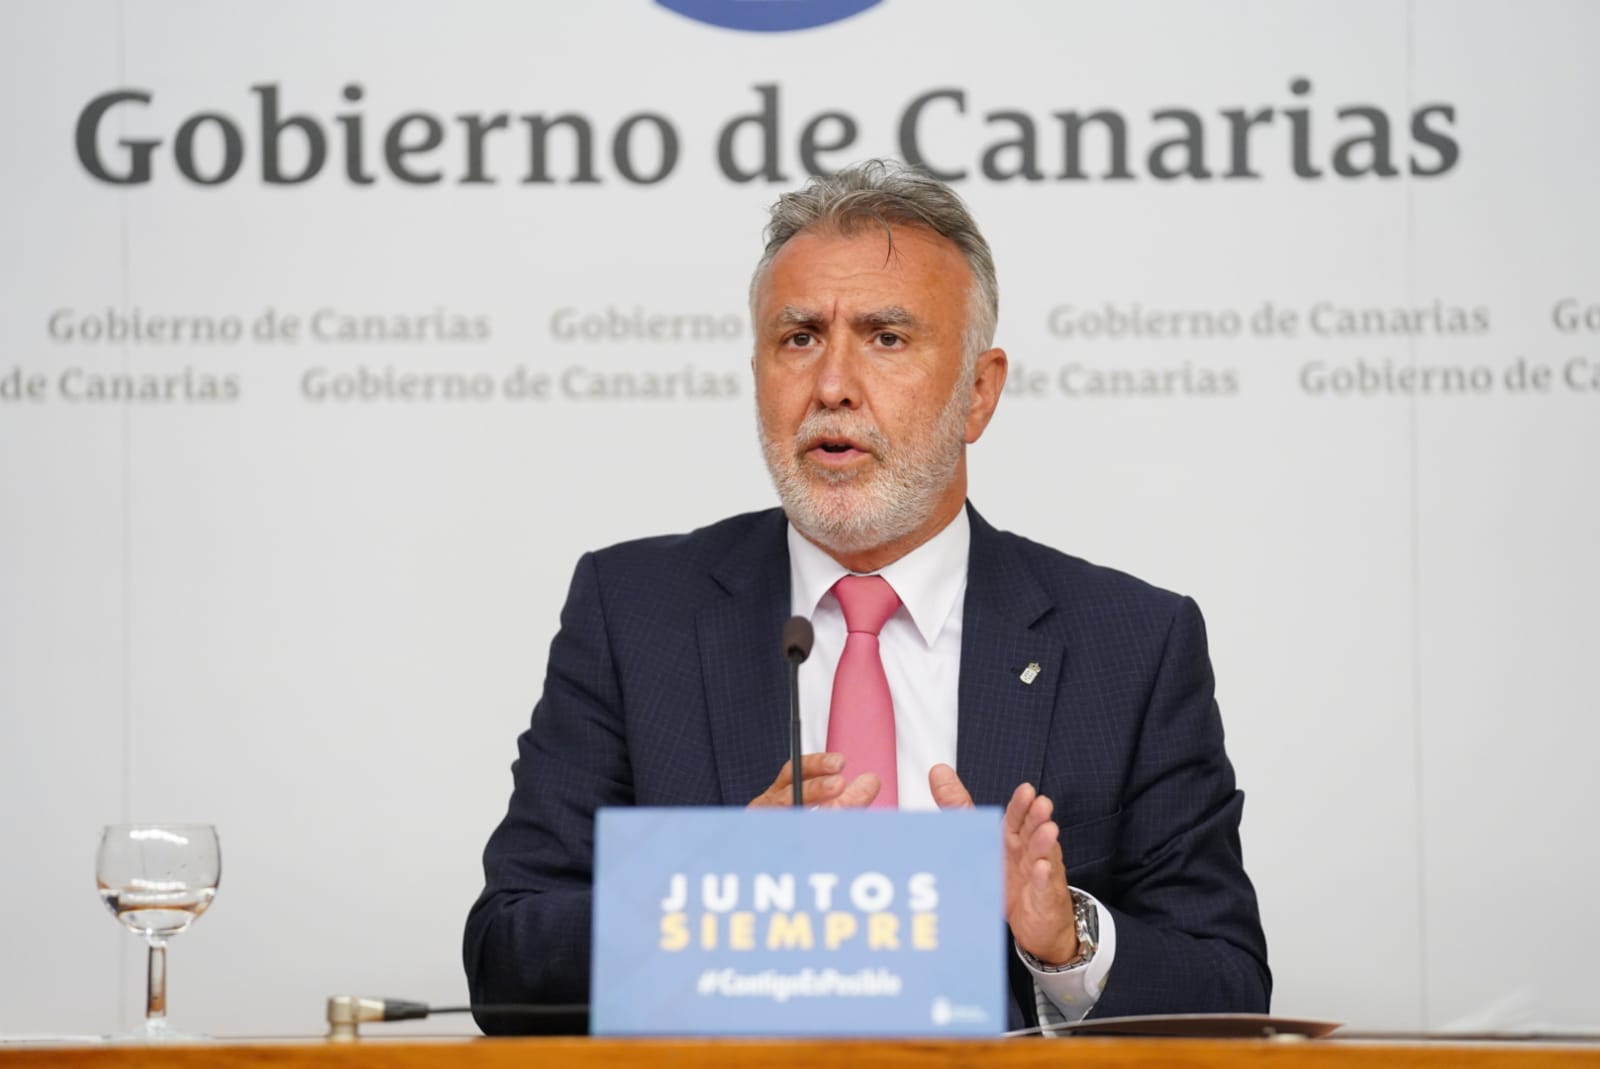 Ángel Víctor Torres, presidente de Canarias / CanariasNoticias.es 